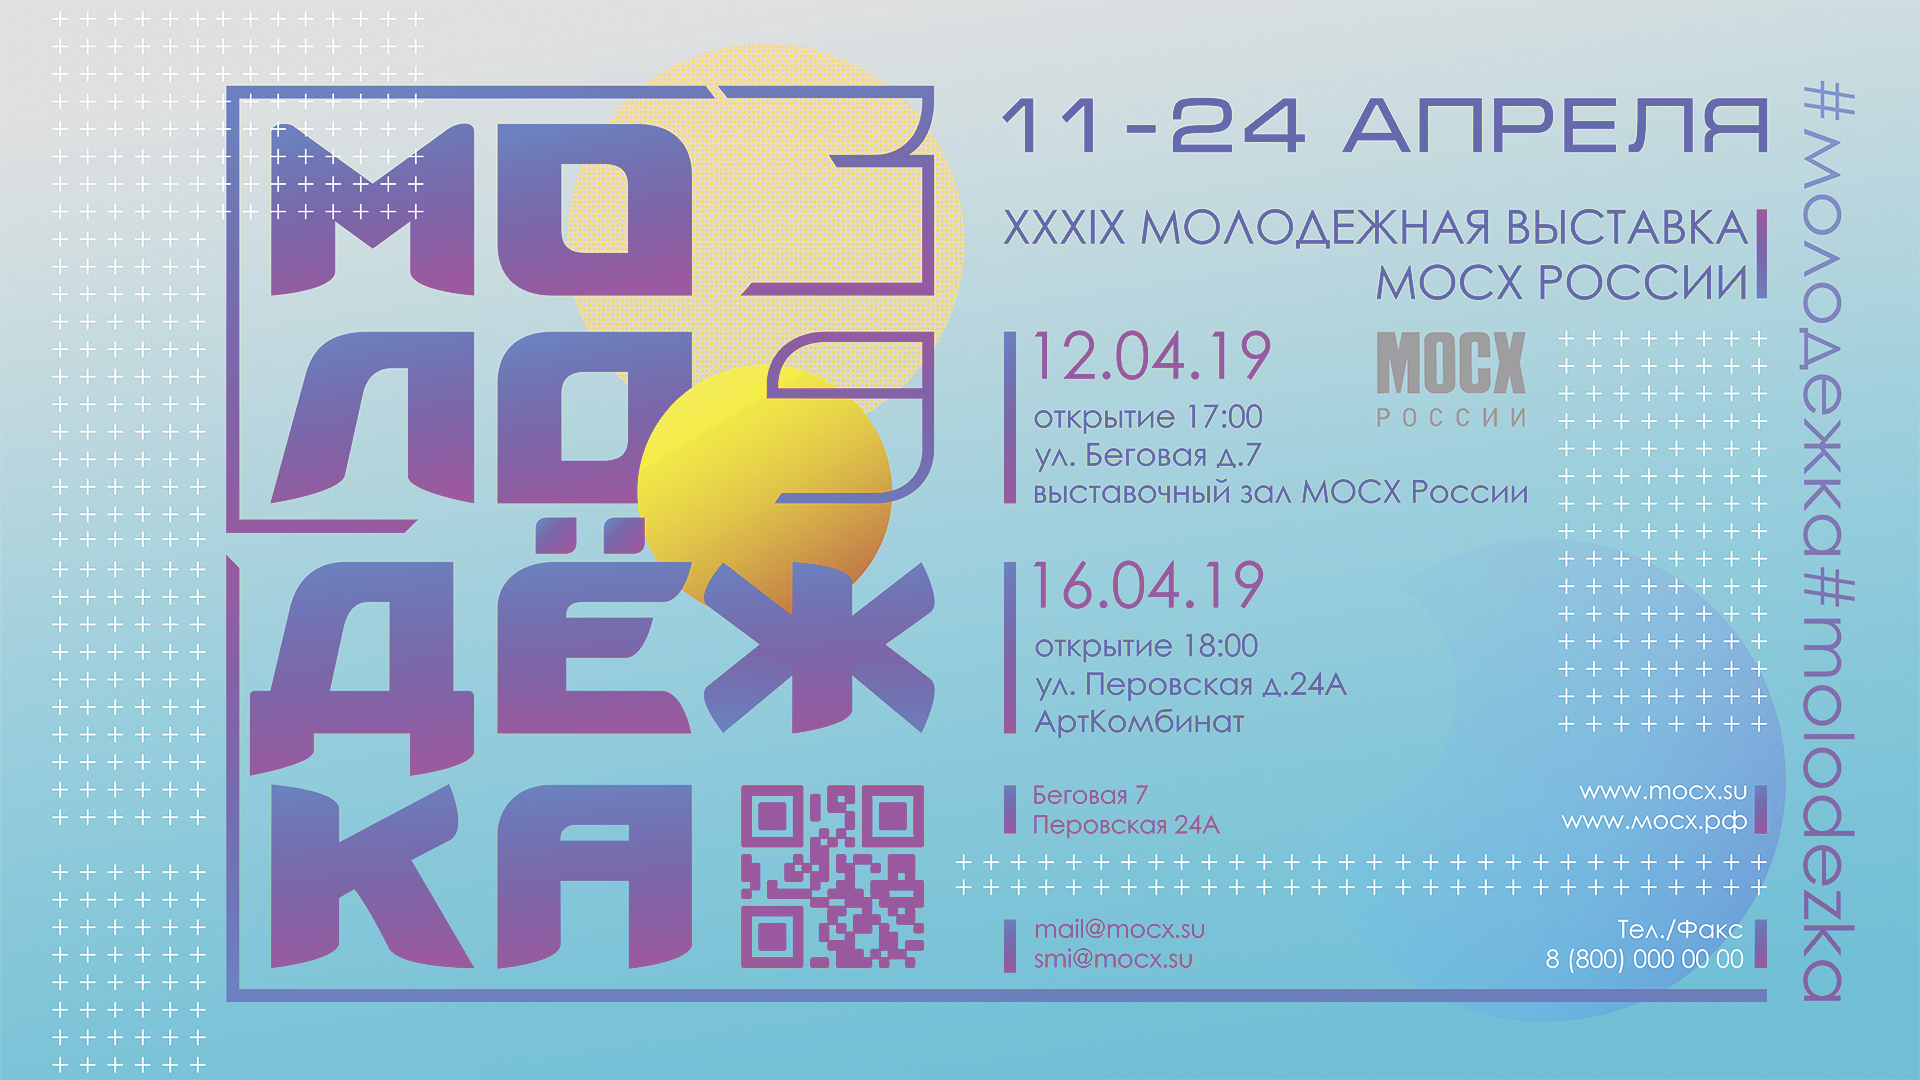 Банер 39 молодежной выставки МОСХ России